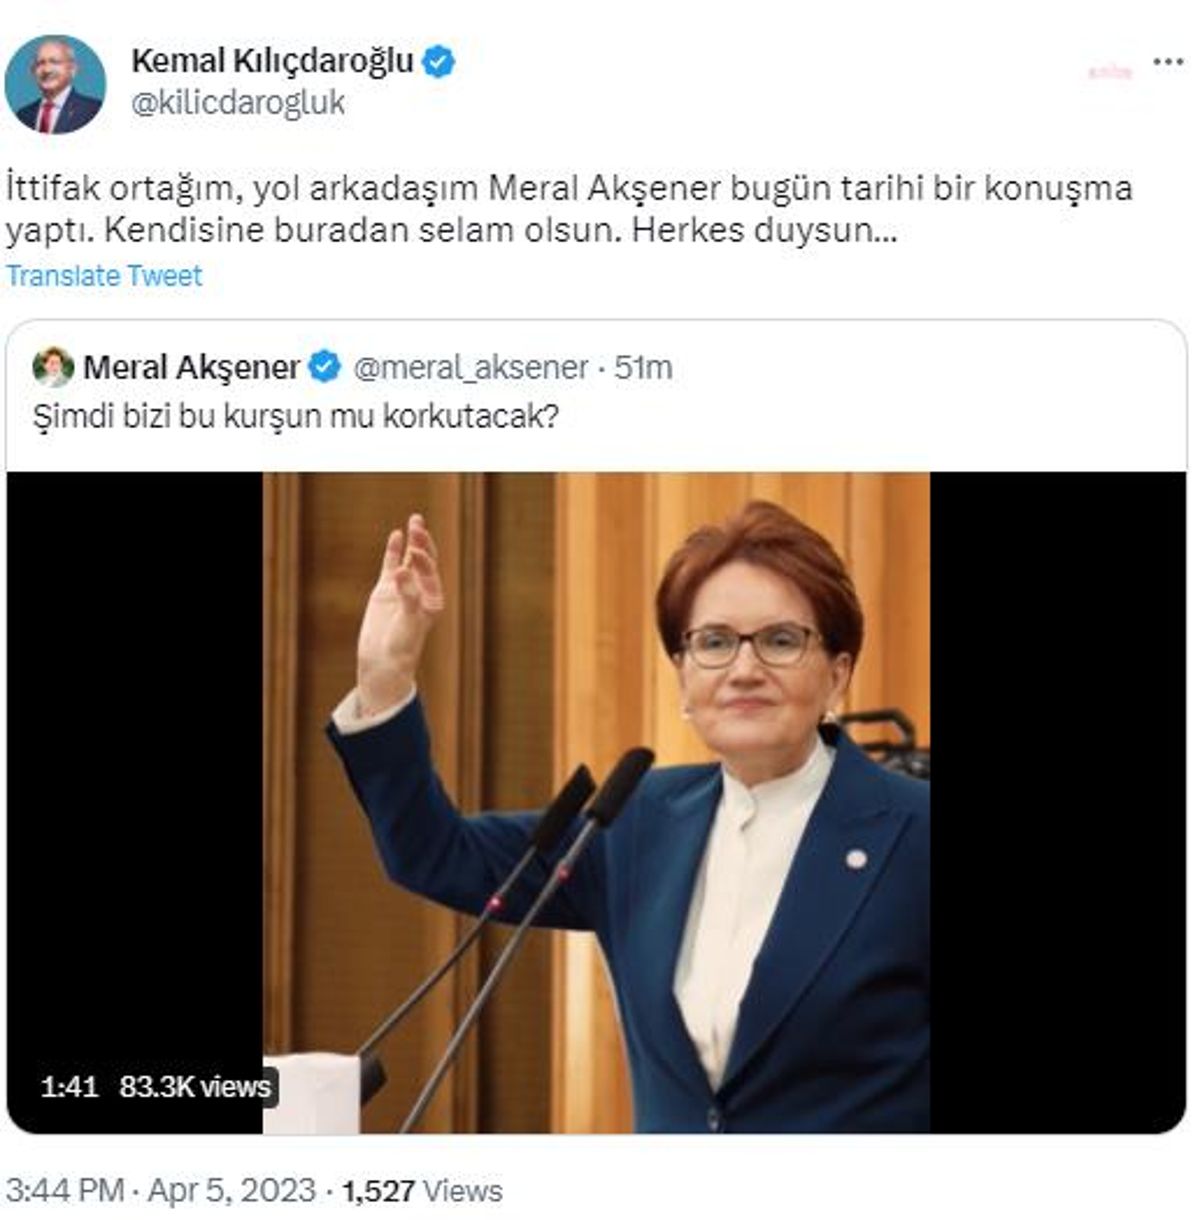 Kılıçdaroğlu: "İttifak Ortağım, Yol Arkadaşım Meral Akşener Bugün Tarihi Bir Konuşma Yaptı. Kendisine Buradan Selam Olsun"